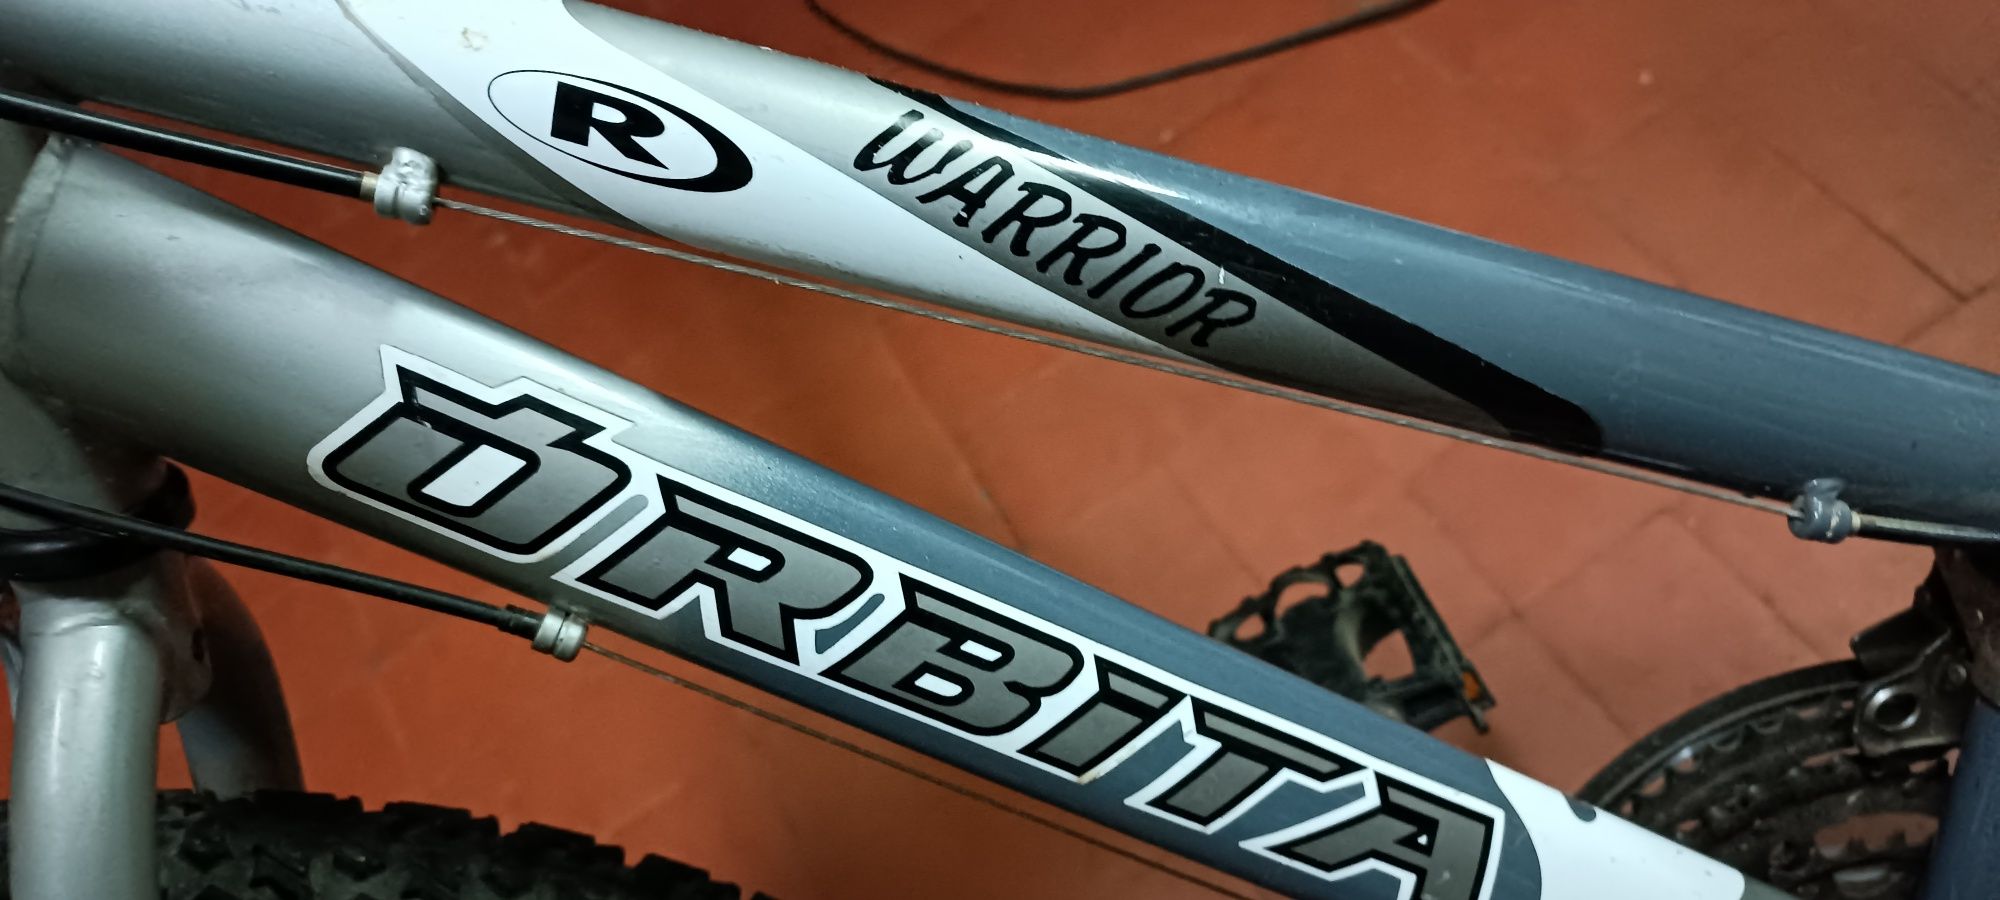 Bicicleta junior órbita warrior roda 24